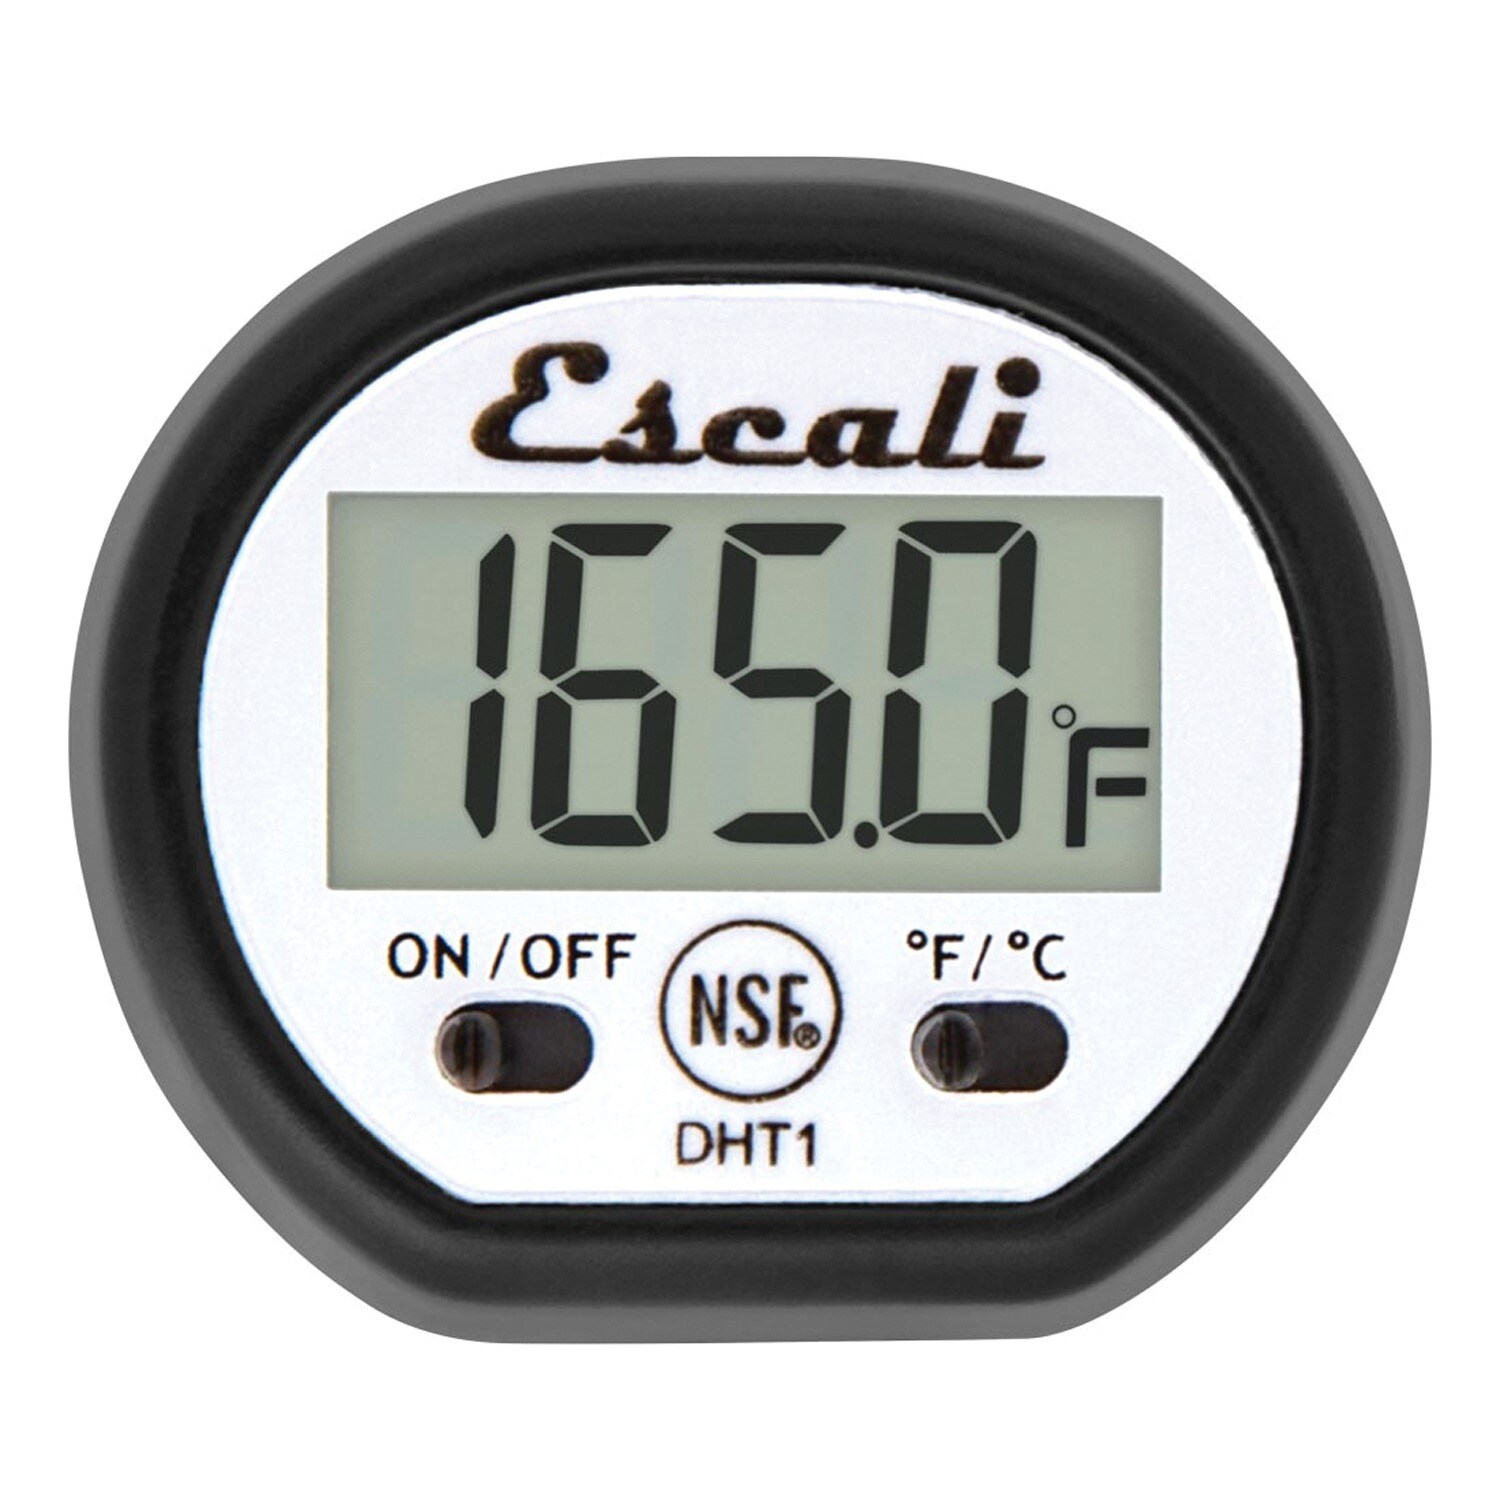 Steel Probe Temperature Thermometer, Smart Temperature Probe